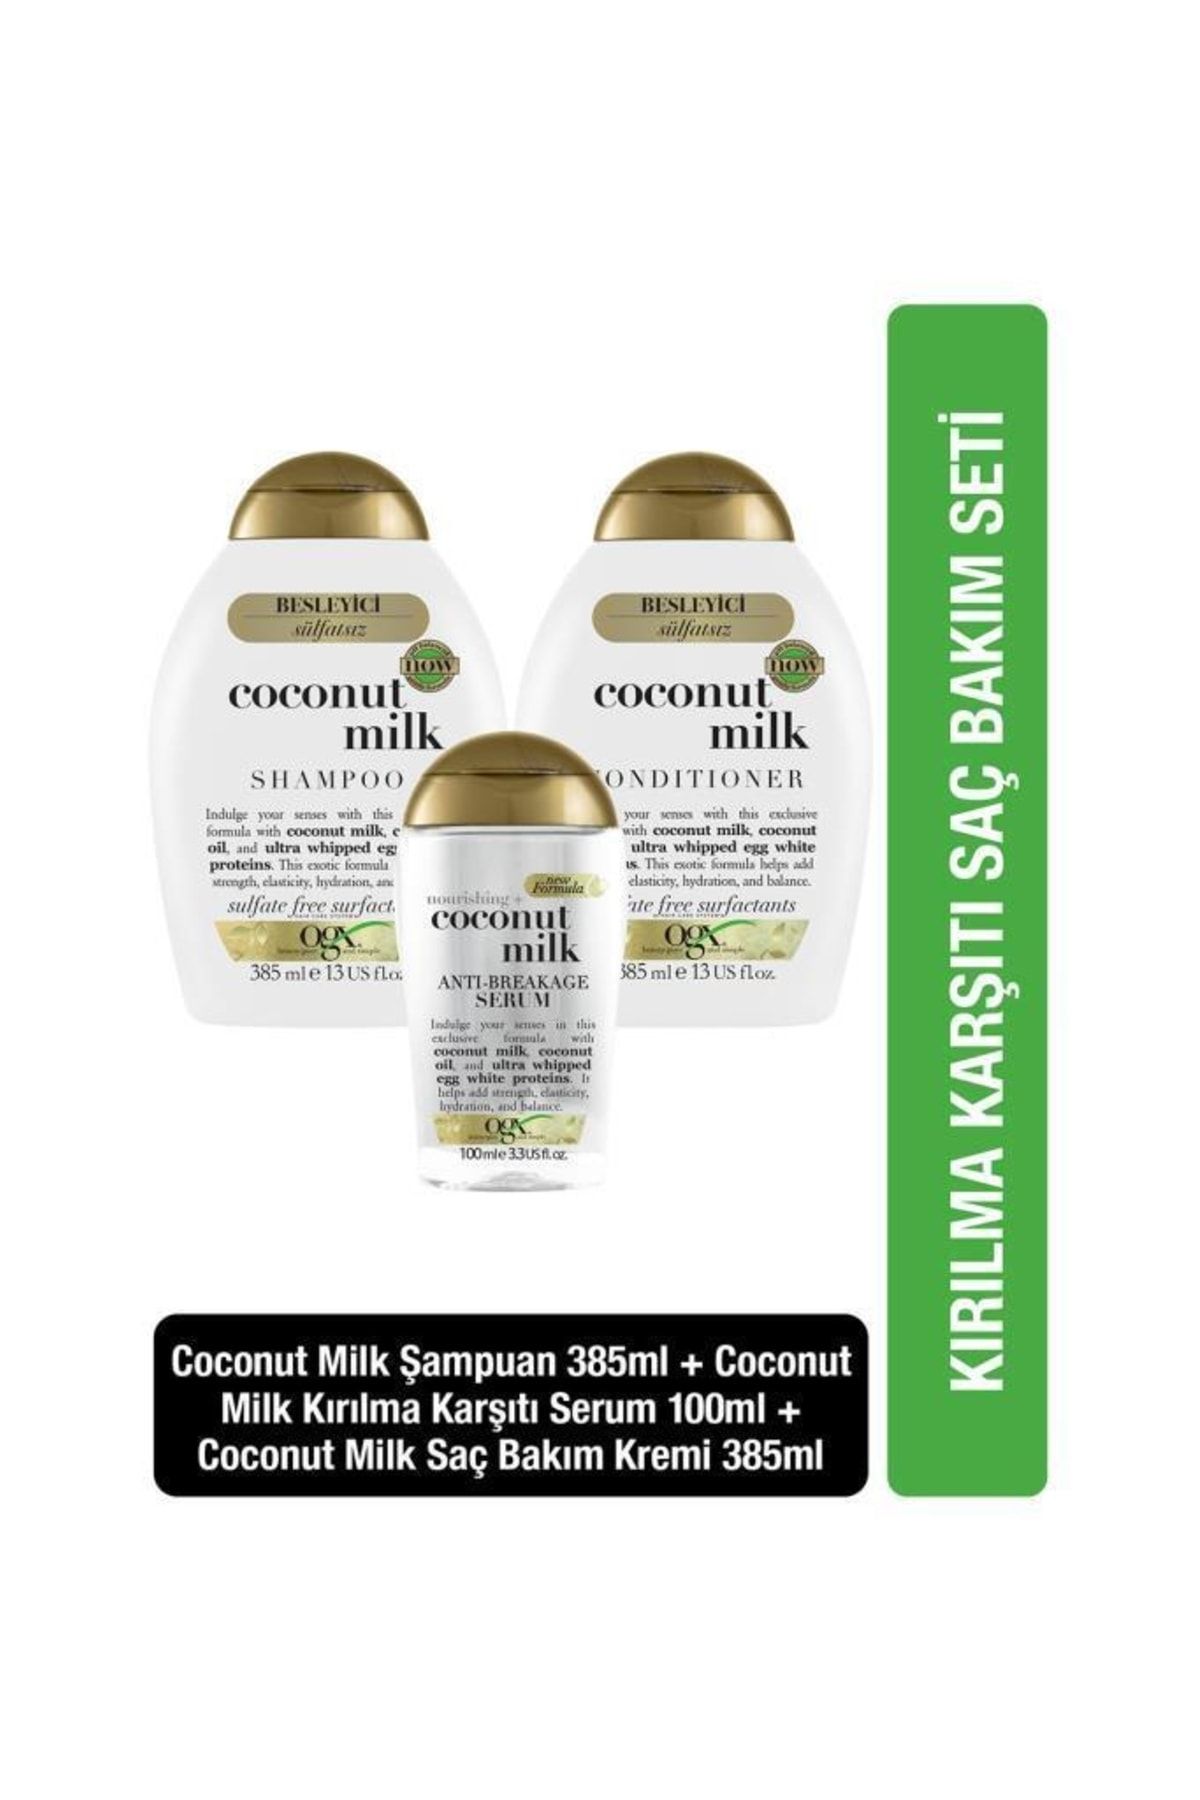 OGX Besleyici Coconut Milk Sülfatsız Şampuan Ve Sülfatsız Bakım Kremi 385ml Serum 100ml